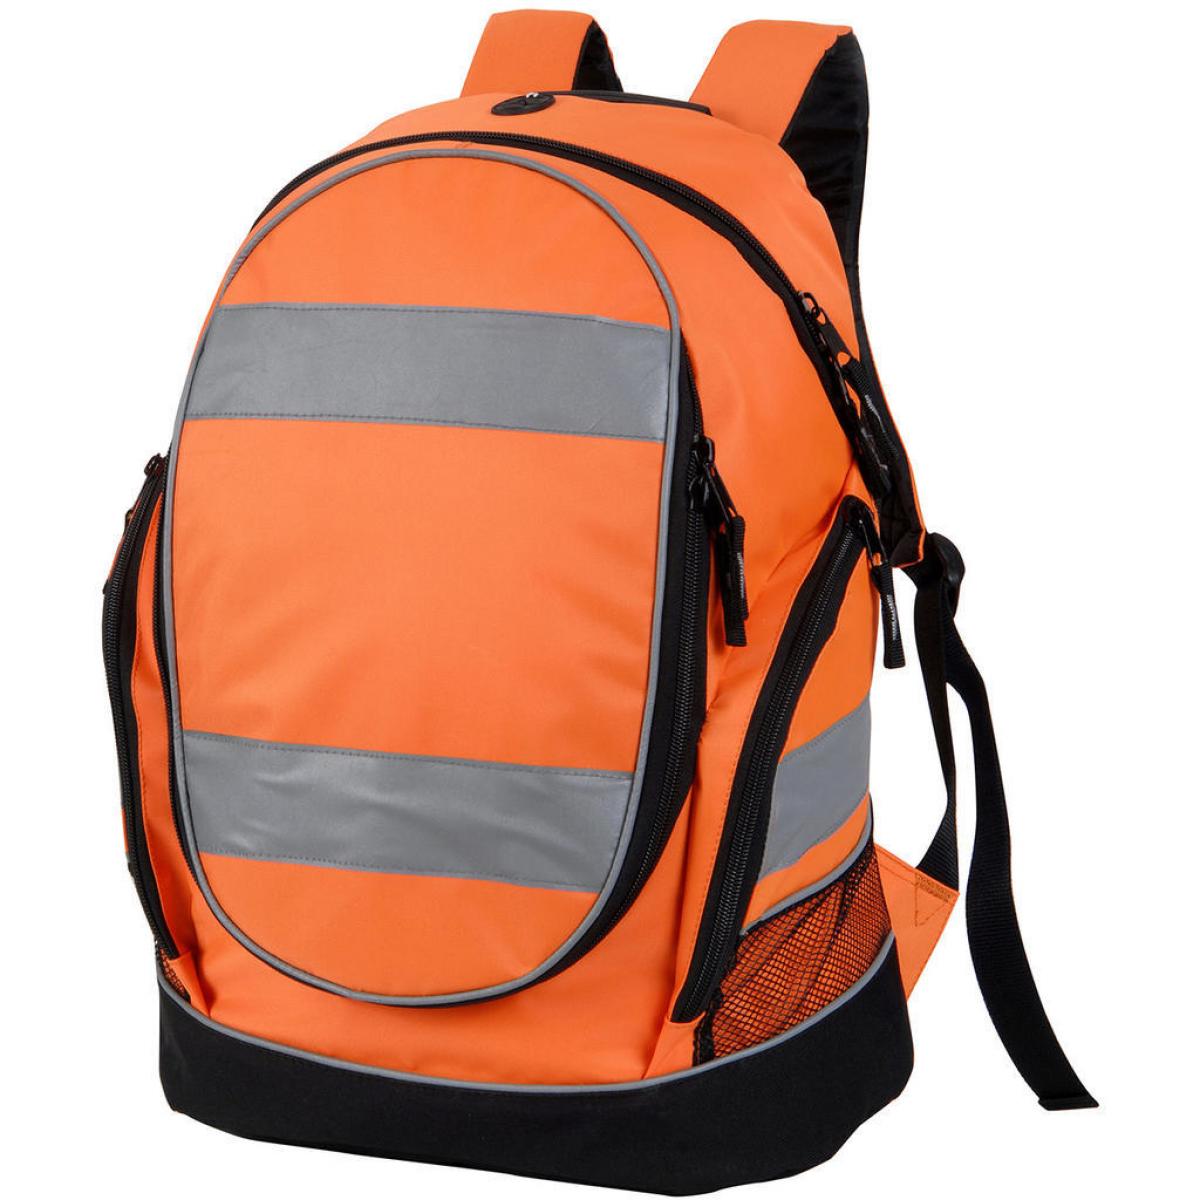 Hersteller: Shugon Herstellernummer: SH8001 Artikelbezeichnung: Hi-Vis Backpack 28 x 42 x 15 cm Farbe: Hi-Vis Orange/Black